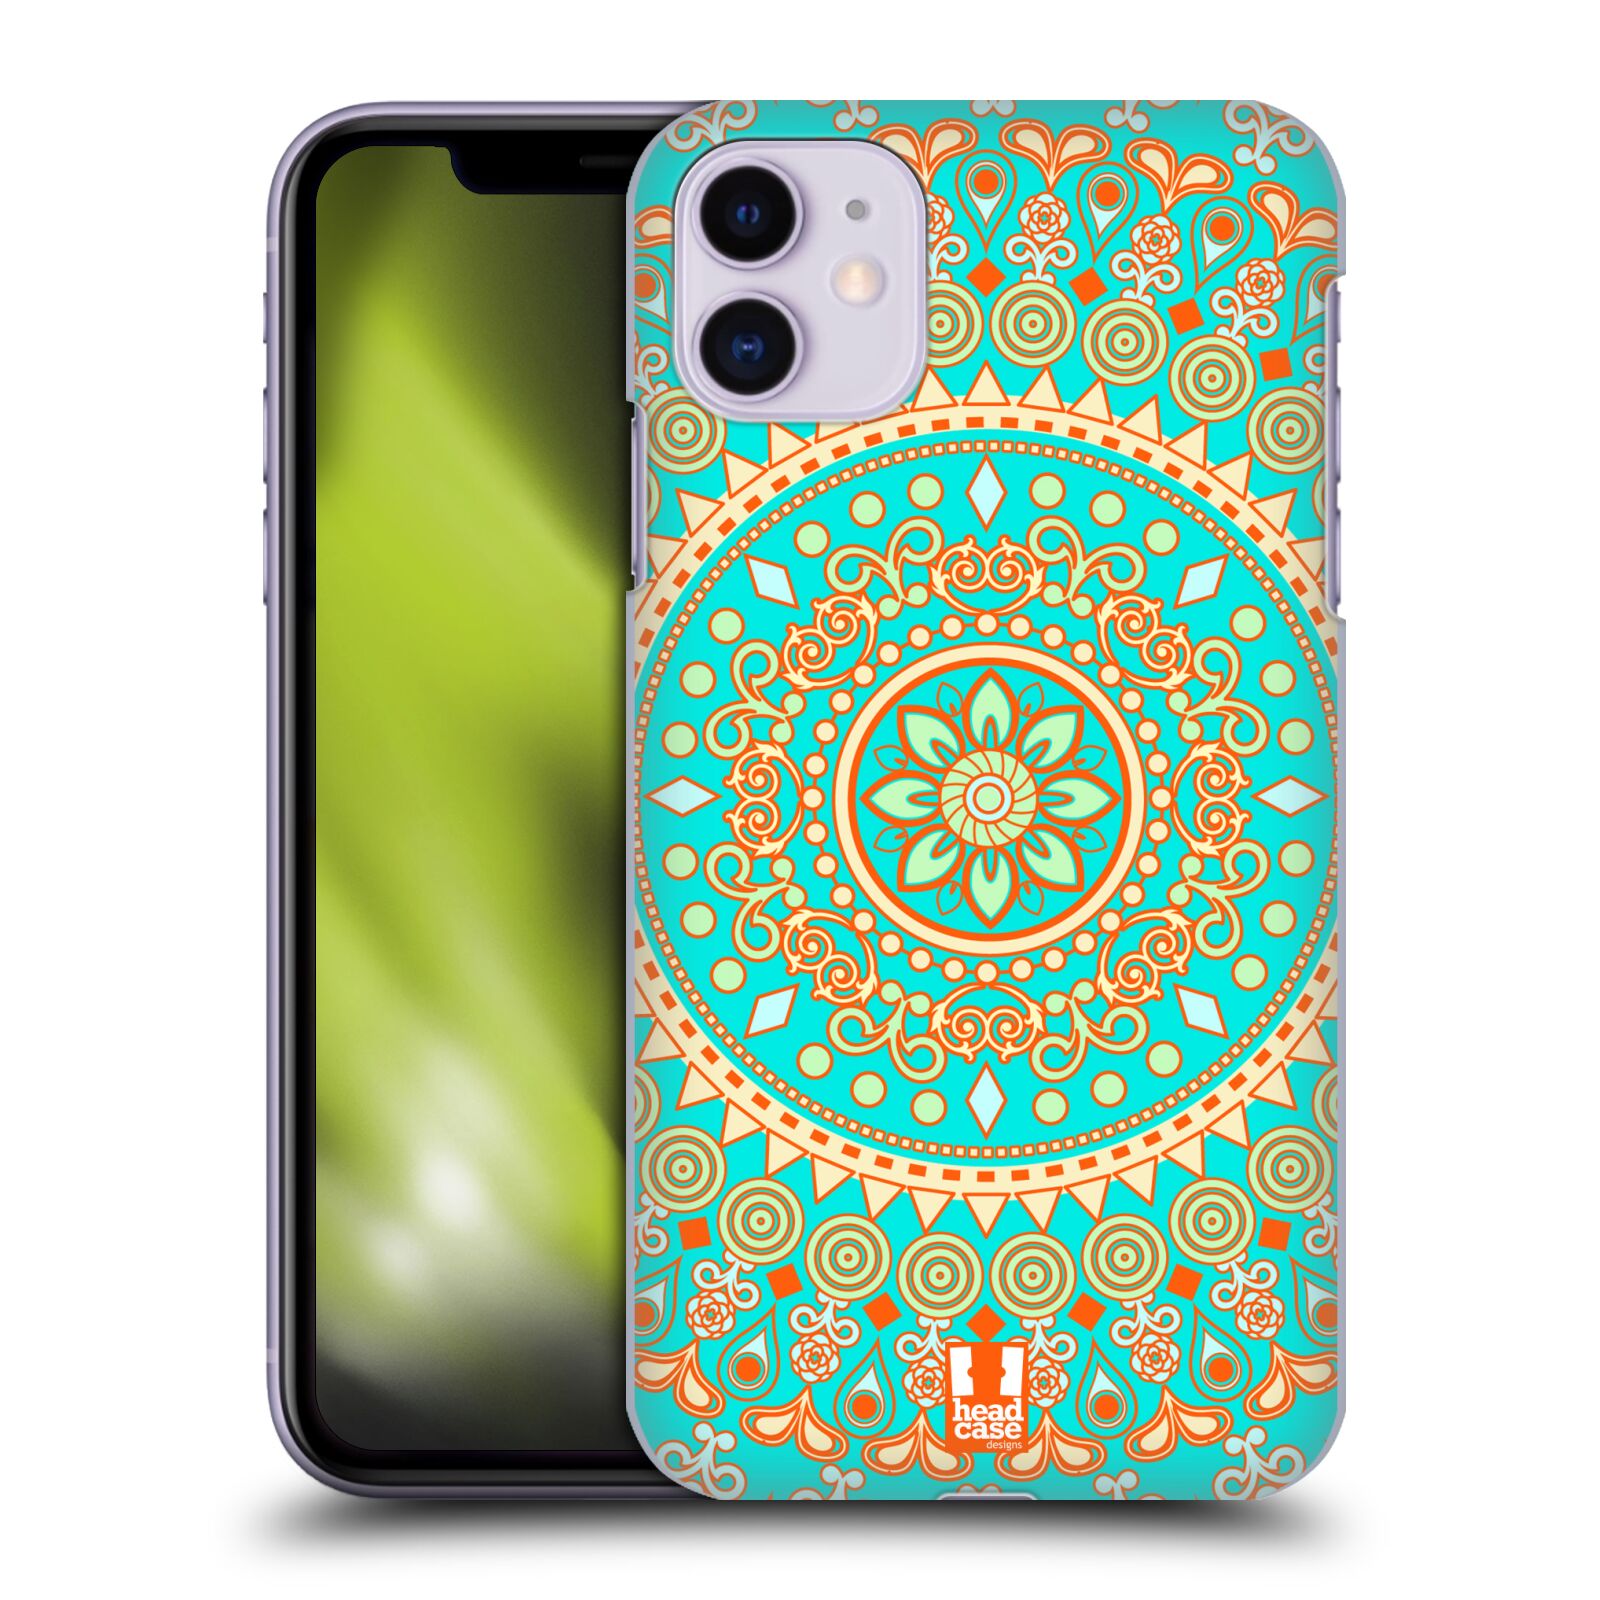 Pouzdro na mobil Apple Iphone 11 - HEAD CASE - vzor Indie Mandala slunce barevný motiv TYRKYSOVÁ, ZELENÁ